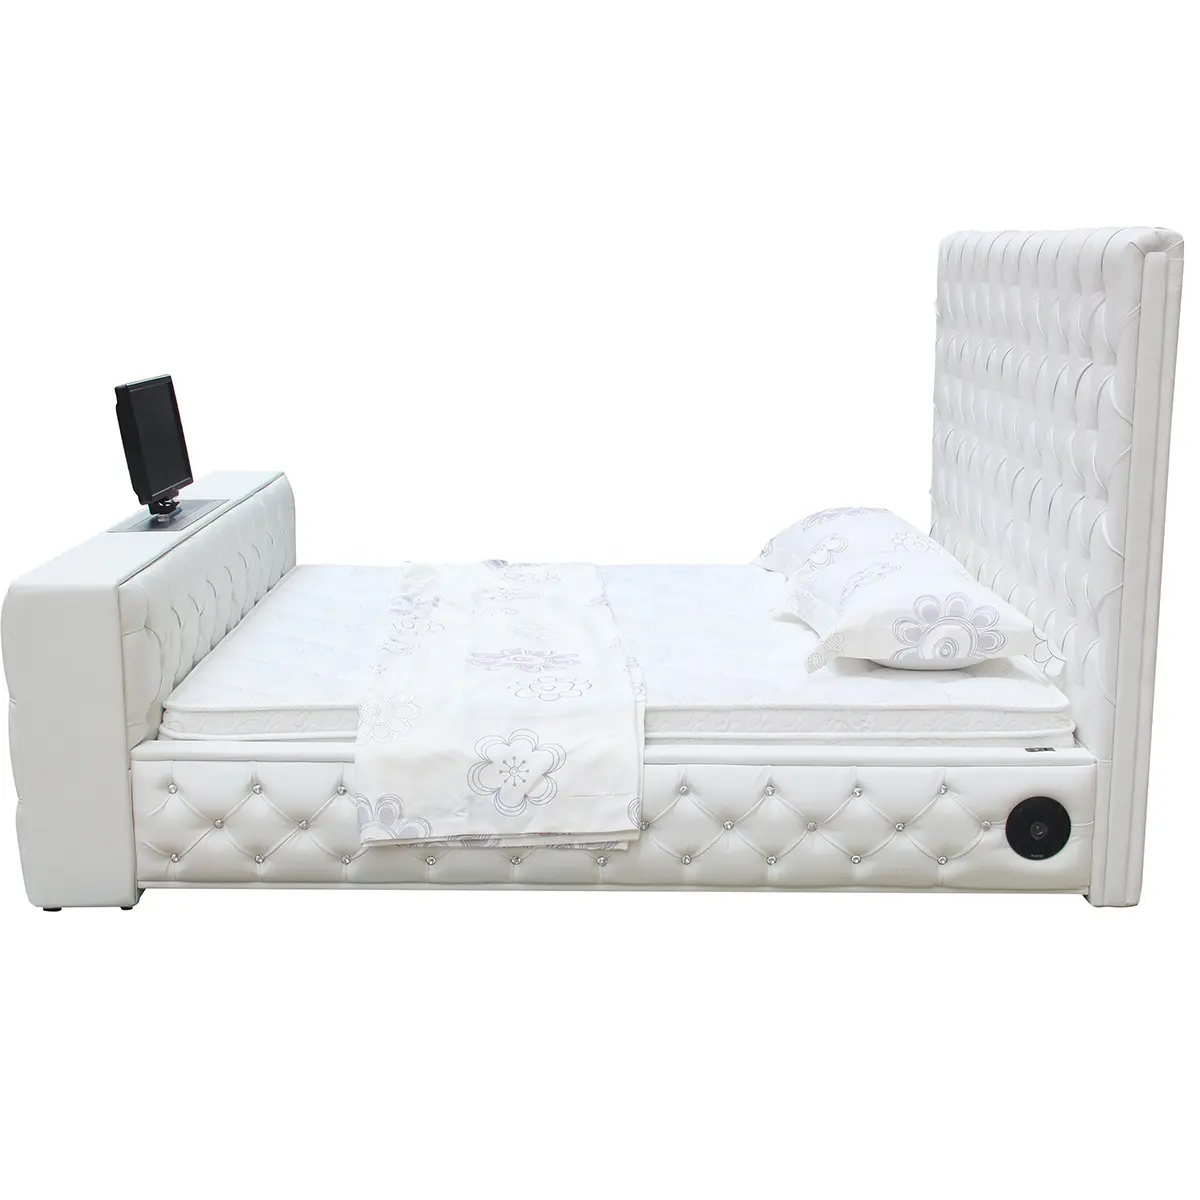 Último diseño cama muebles dorados moderno fácil de arreglar alta calidad cama barata de lujo cama de tamaño completo muebles de dormitorio